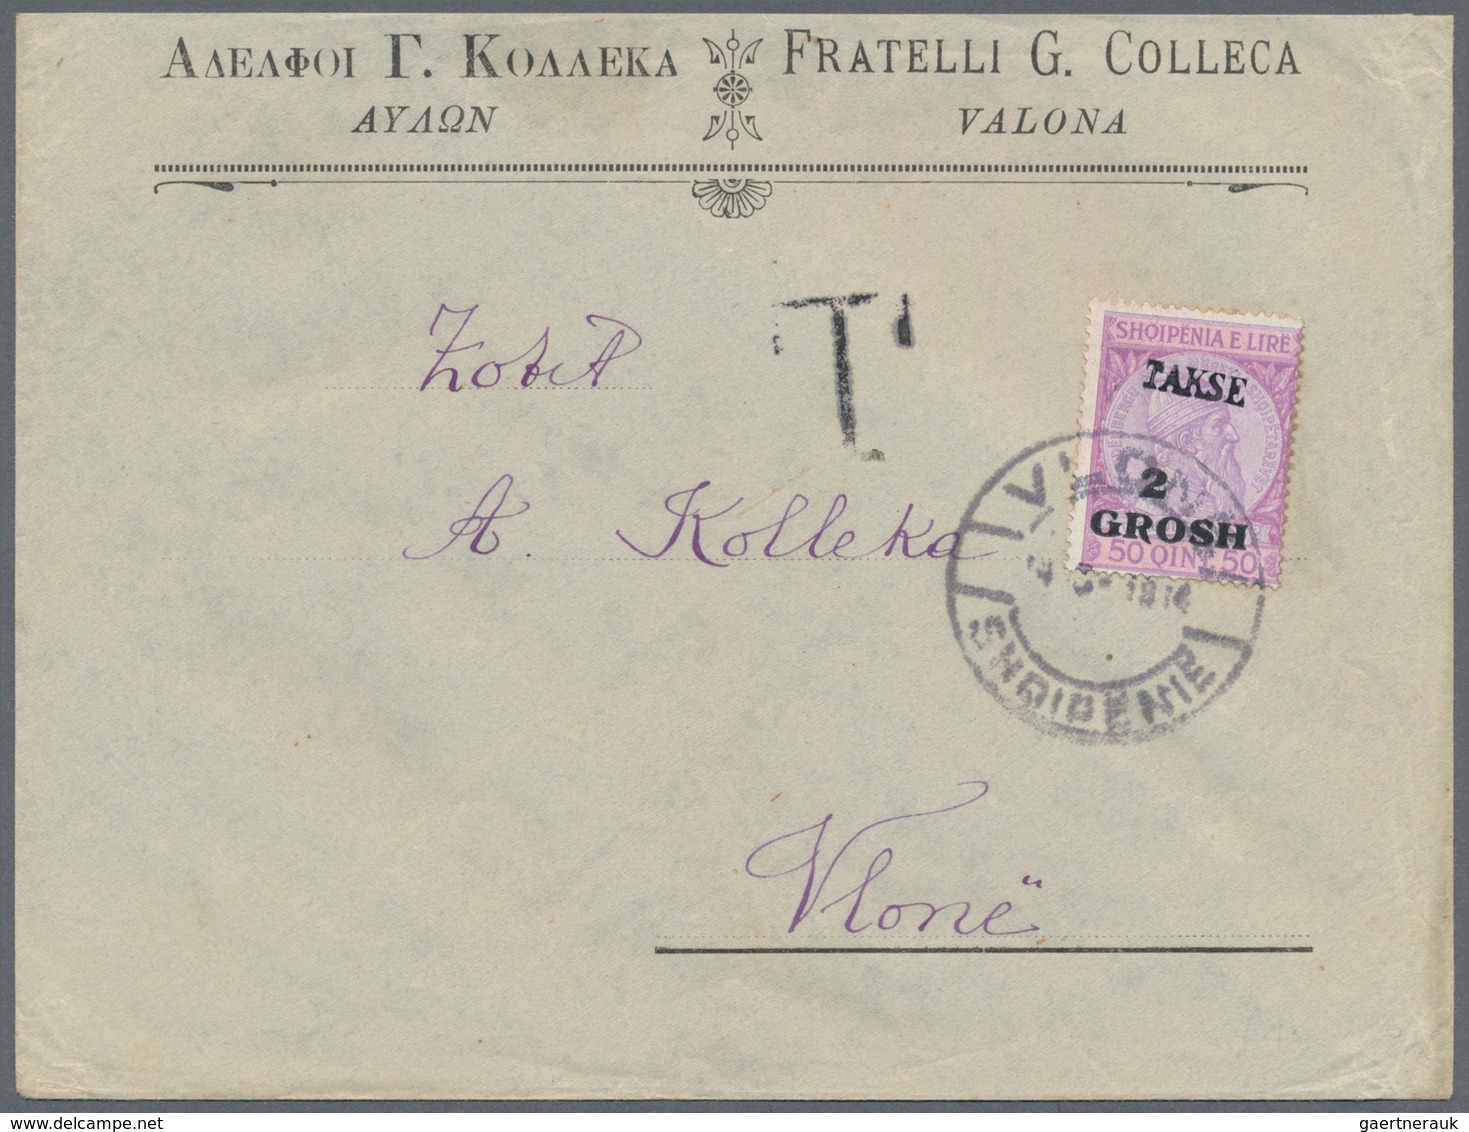 Albanien - Portomarken: 1914. Business Envelope, Unfranked, Addressed Locally, Handstamped T, 2 Gr O - Albanie